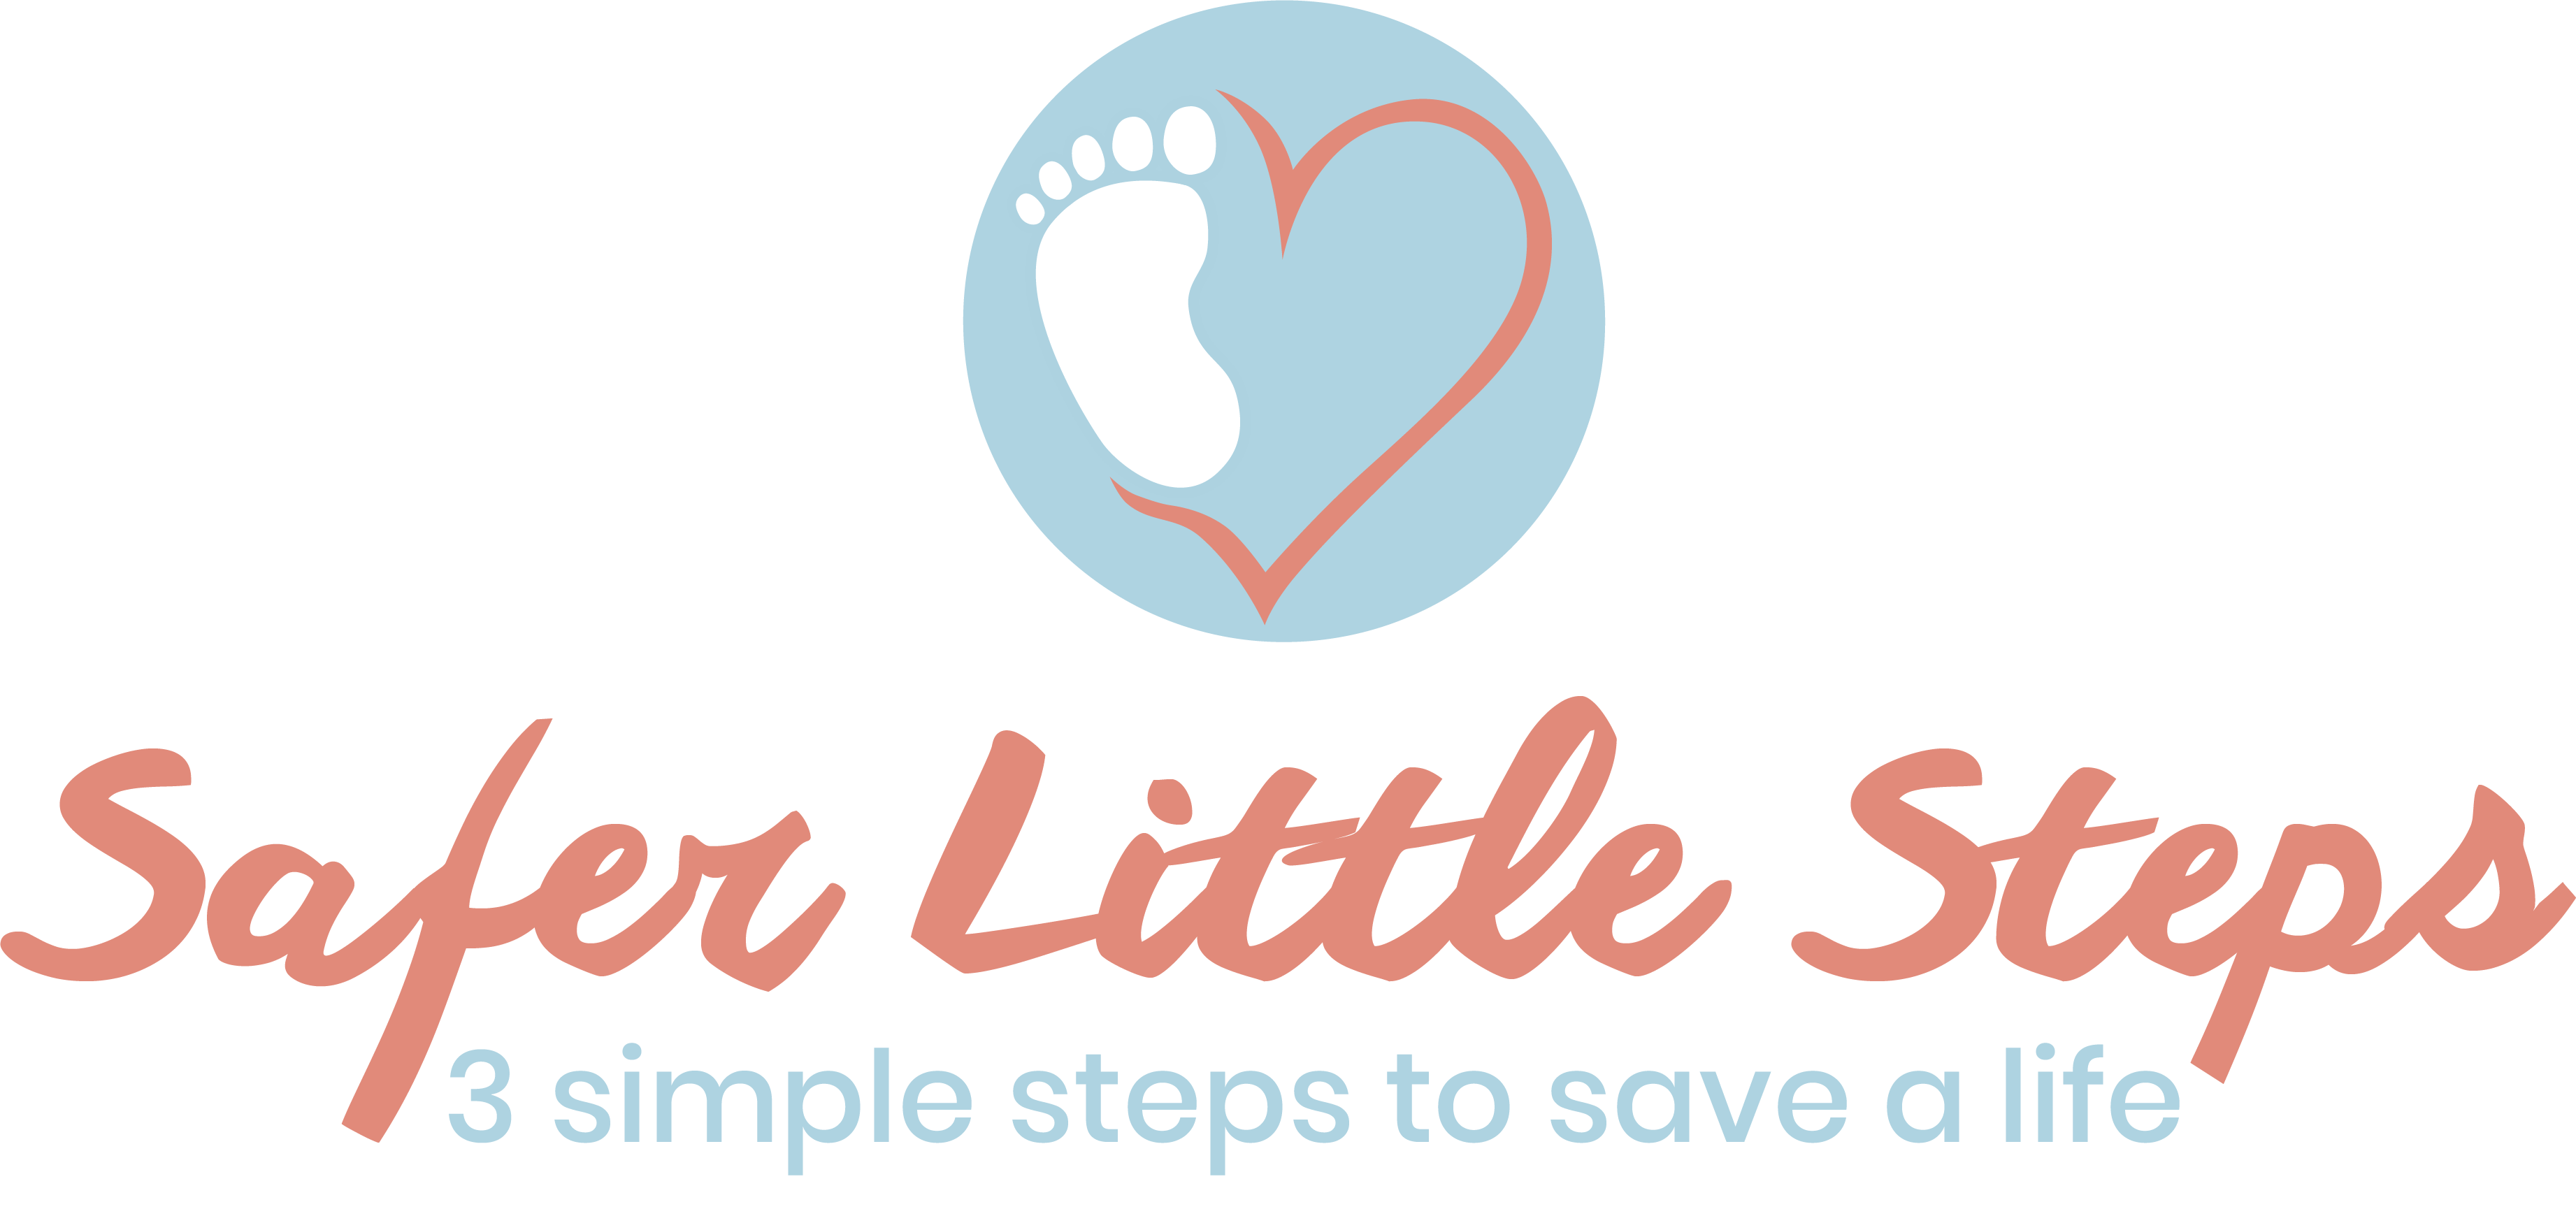 Safer Little Steps